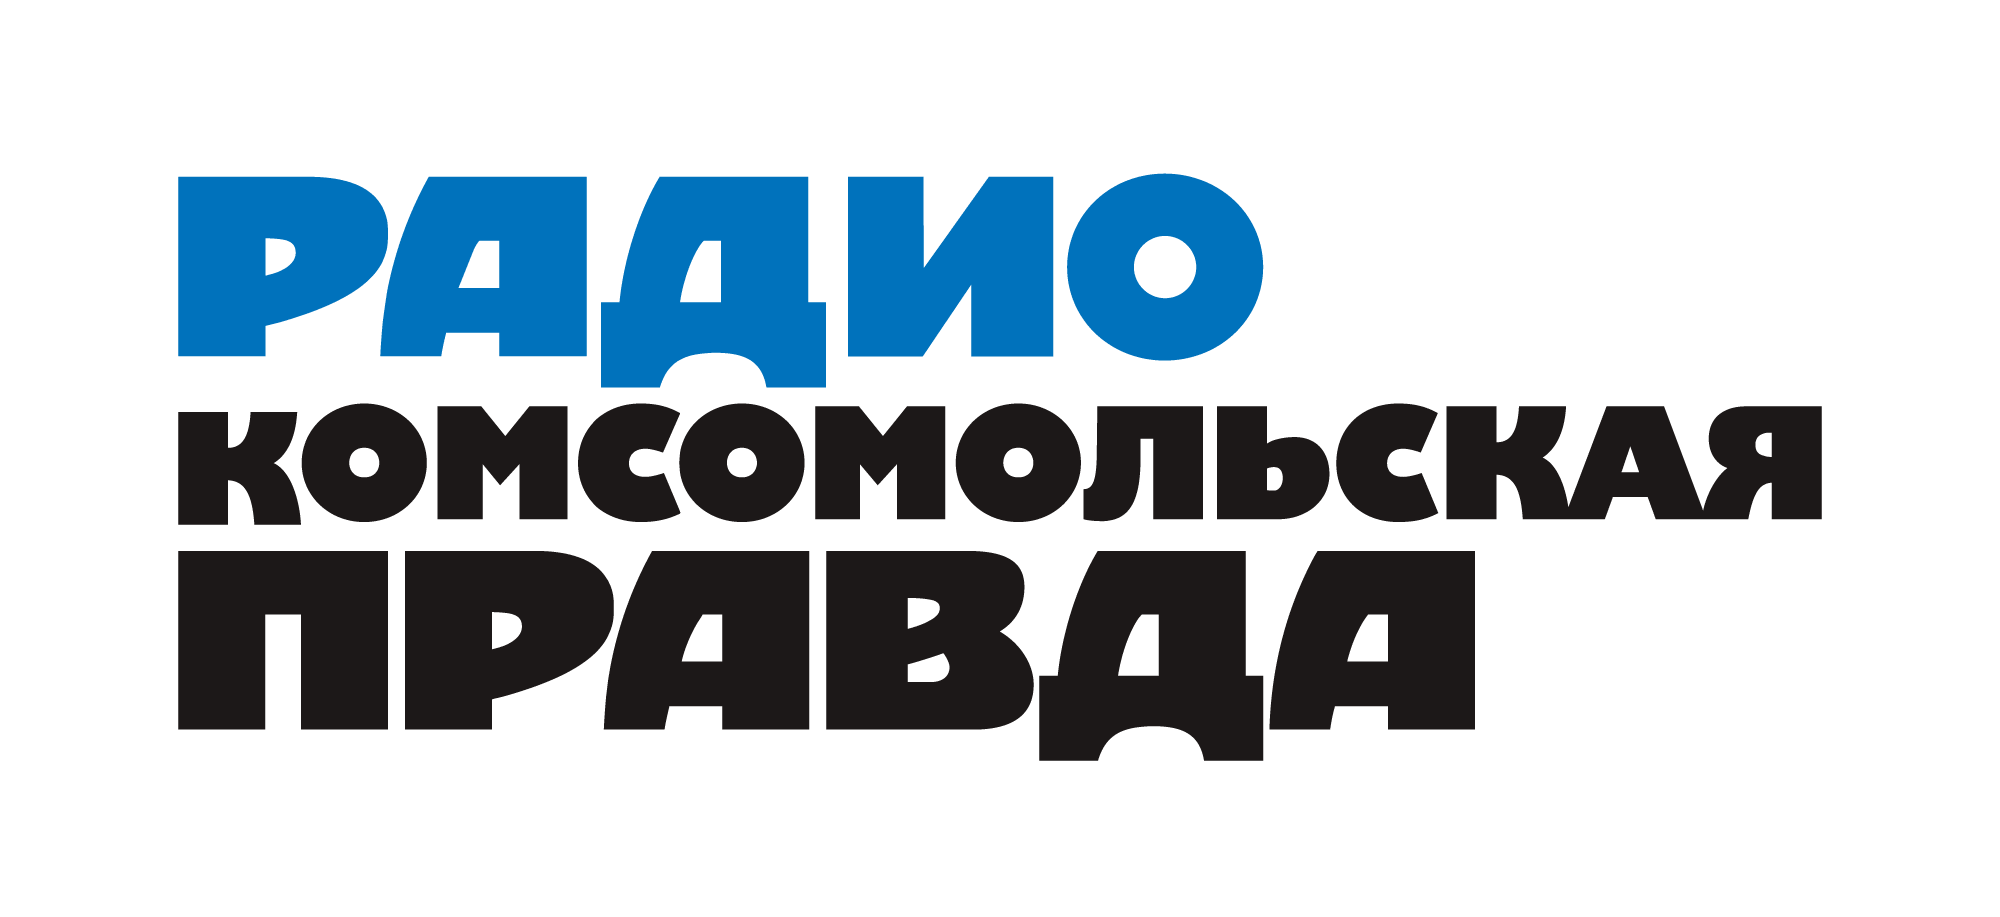 Комсомольская правда 105.7FM, г.Ставрополь